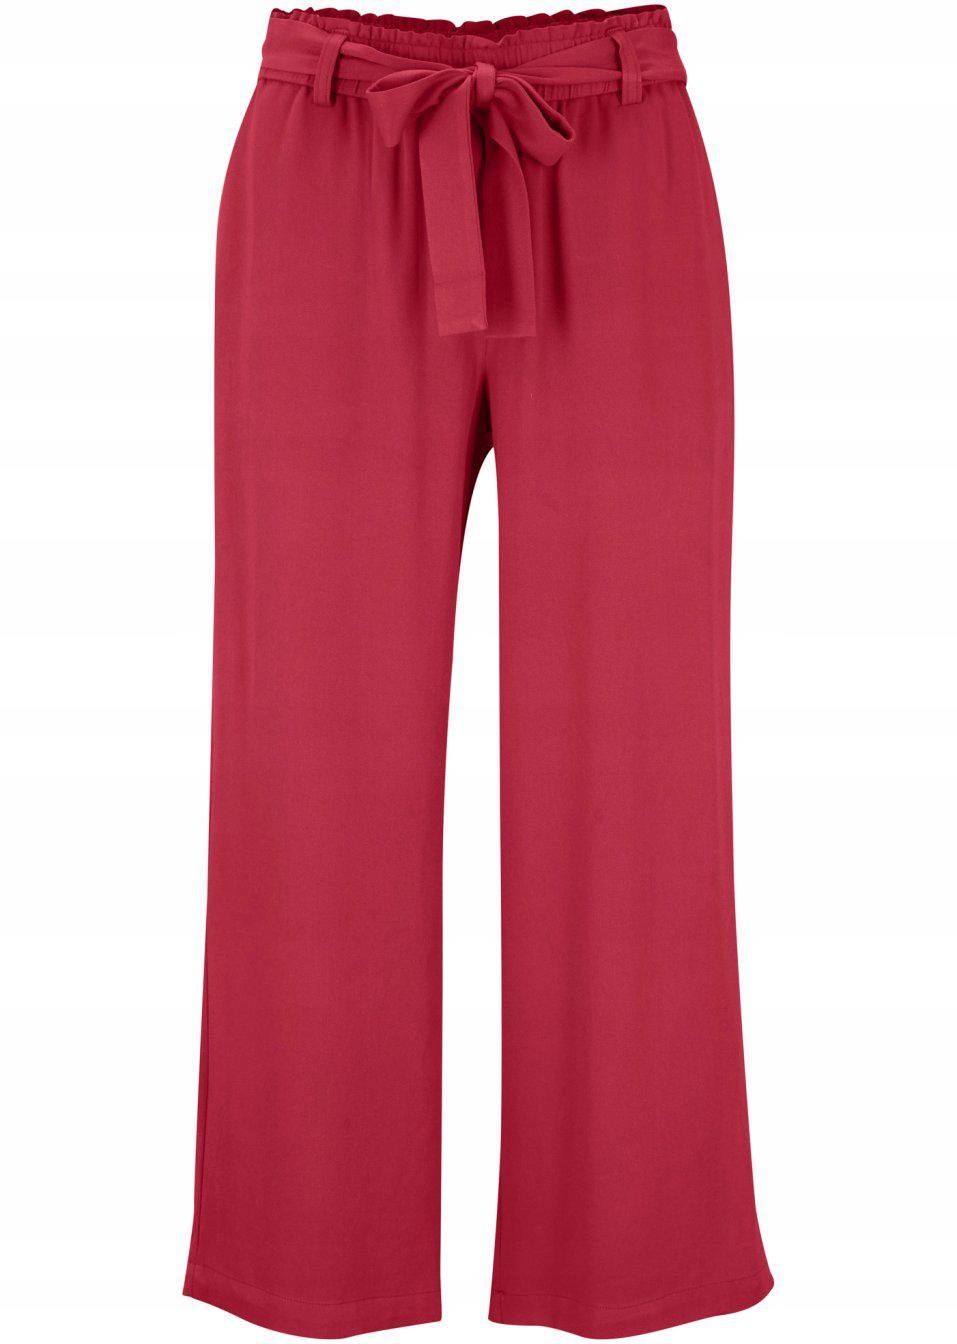 bonprix czerwone luźne szerokie spodnie damskie wiązany pasek 42-44